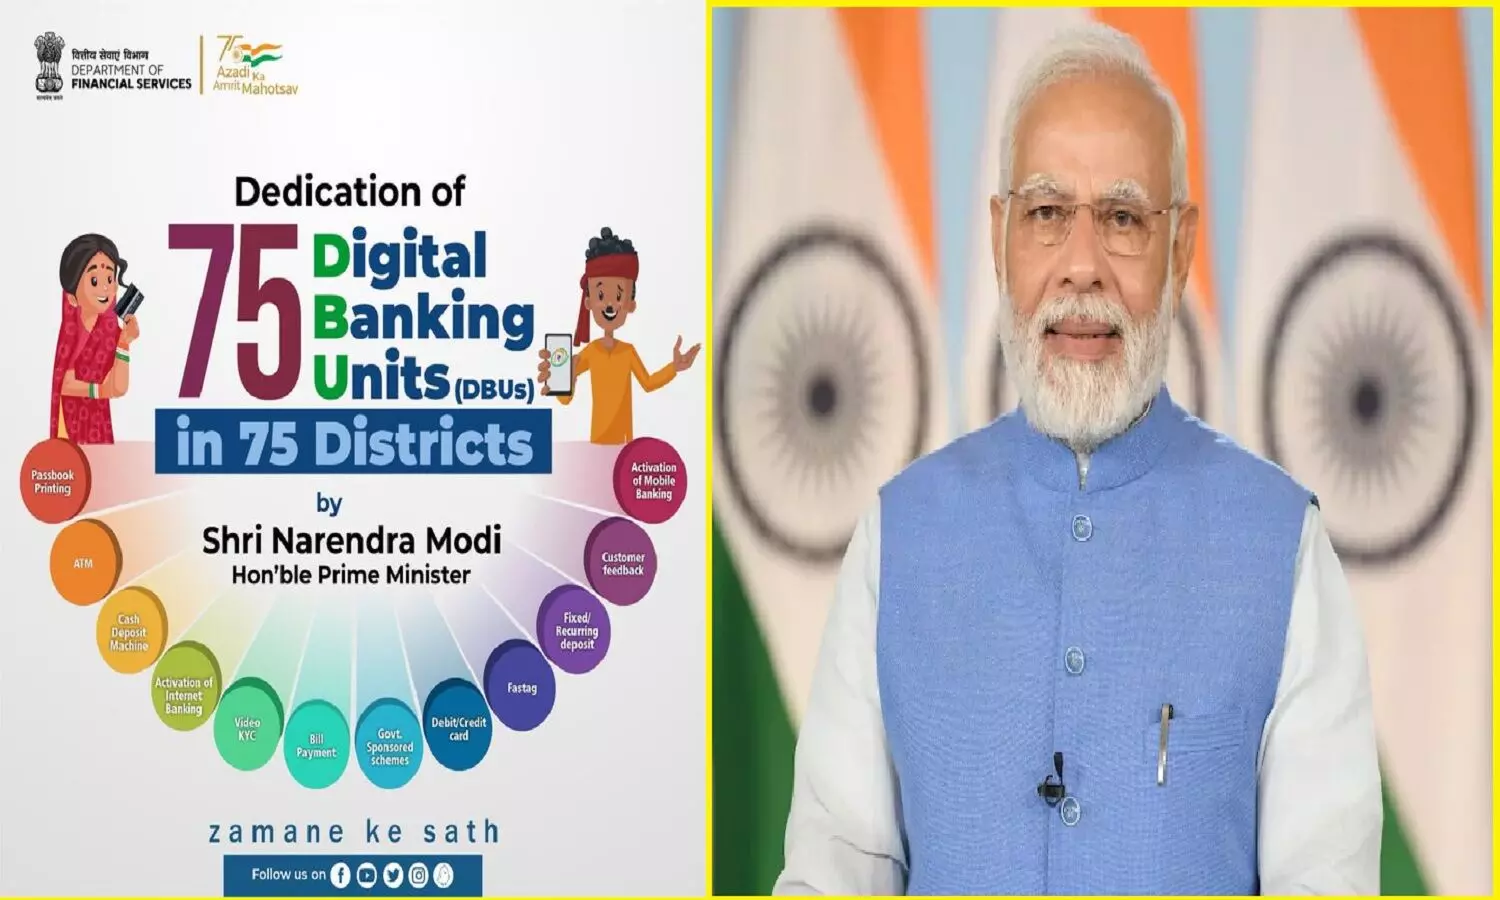 डिजिटल बैंकिंग यूनिट क्या है? पीएम मोदी ने 75 जिलों में Digital Banking Unit शुरू की है, DBU से क्या लाभ होगा